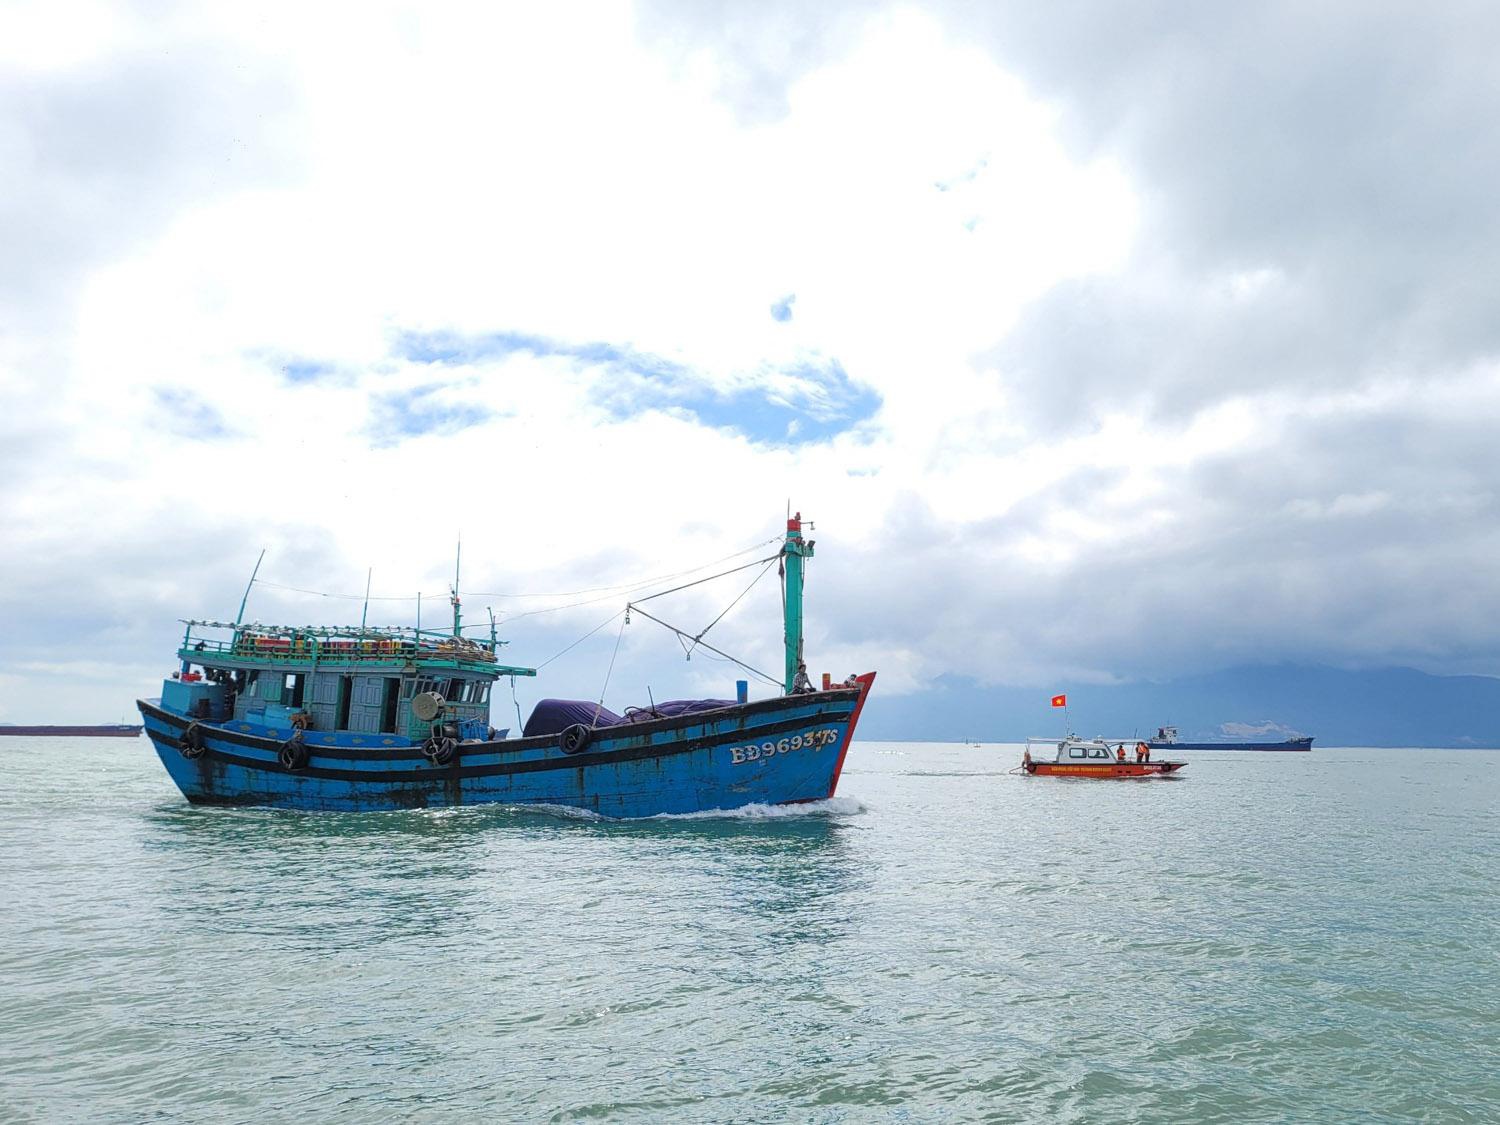 Bình Định: Một ngư dân tử vong sau 5 ngày xung đột với 2 ngư dân khác - ảnh 2